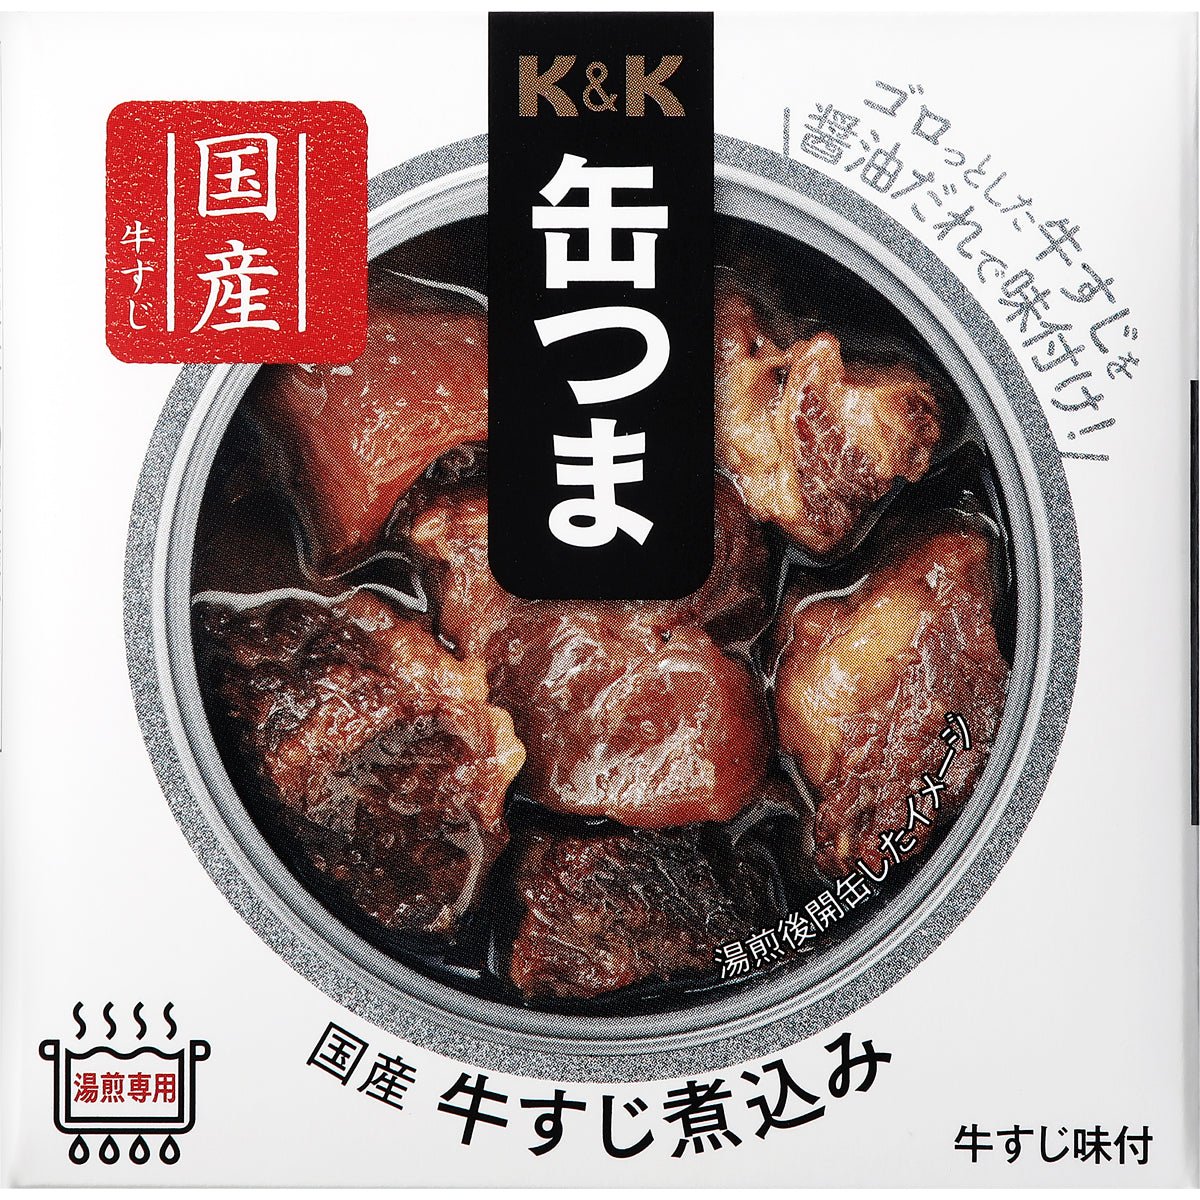 K & K Cans 라이스 쇠고기 쇠고기